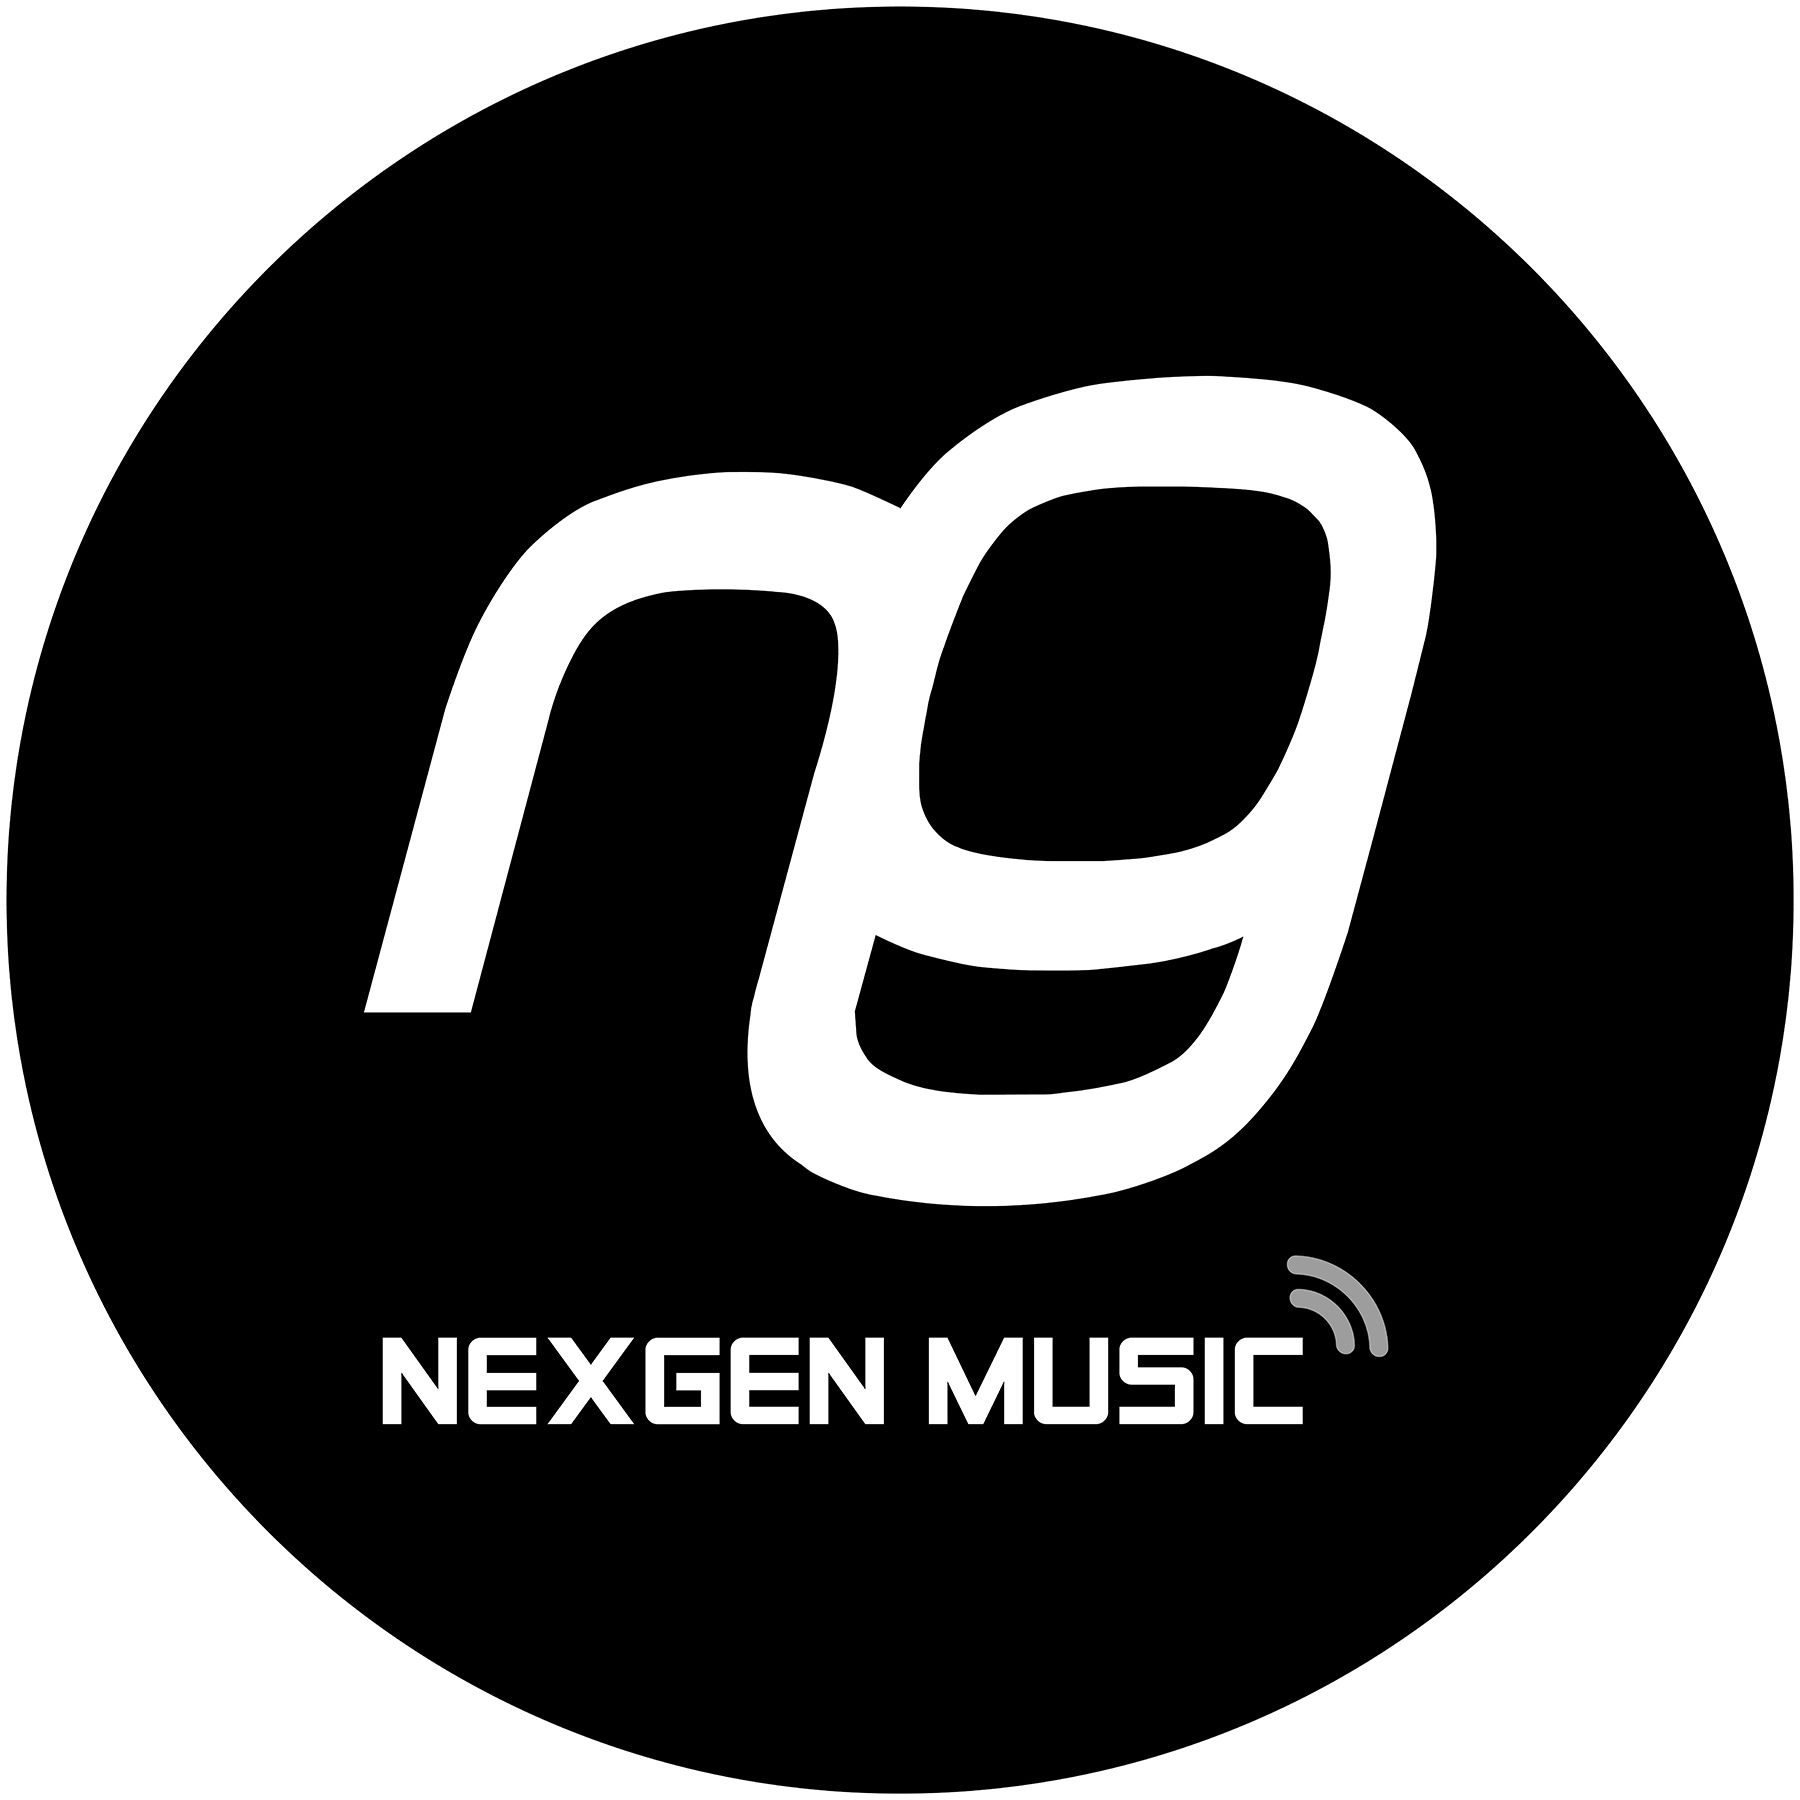 NexGen Music logo